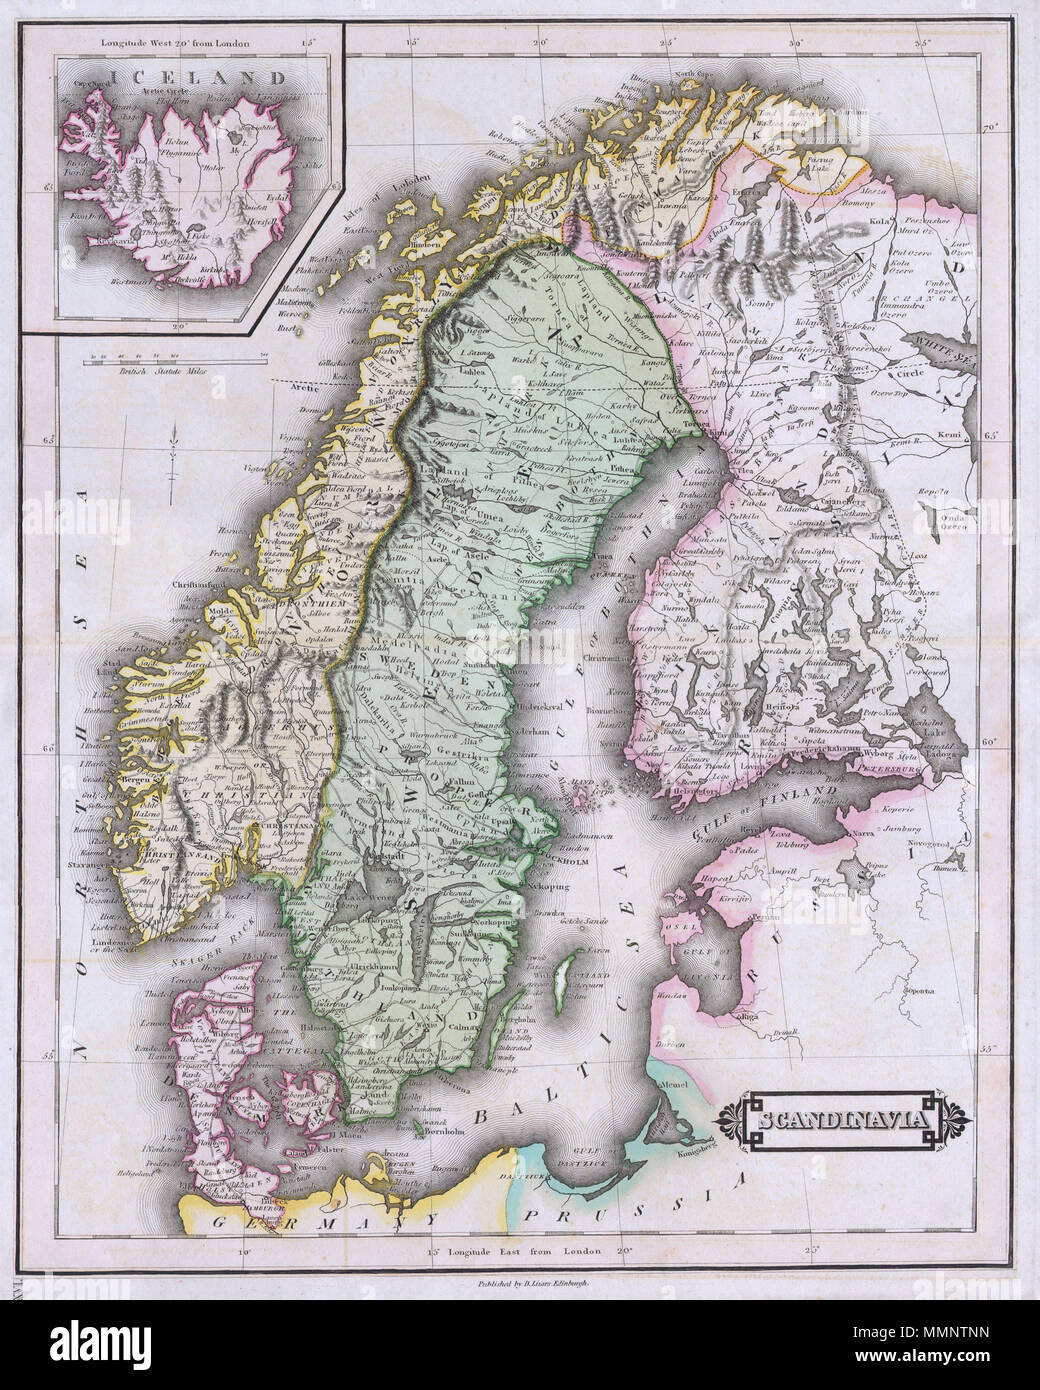 . Inglese: questa bella mano mappa colorata della Scandinavia è stato prodotto da Daniel Lizars nel 1840. Mostra tutta la Scandinavia tra cui la Norvegia, Svezia, Finlandia e Danimarca. Inset di Islanda nell'angolo superiore sinistro. Una delle migliori mappe di Scandinavia a comparire nella metà del XIX secolo. Non datato. La Scandinavia. 1840. Questo file è privo di informazioni sull'autore. 7 1840 Lizars Mappa della Scandinavia ( Norvegia, Svezia, Finlandia, Danimarca, Islanda ) - Geographicus - Scandinavia-lizar-1840 Foto Stock